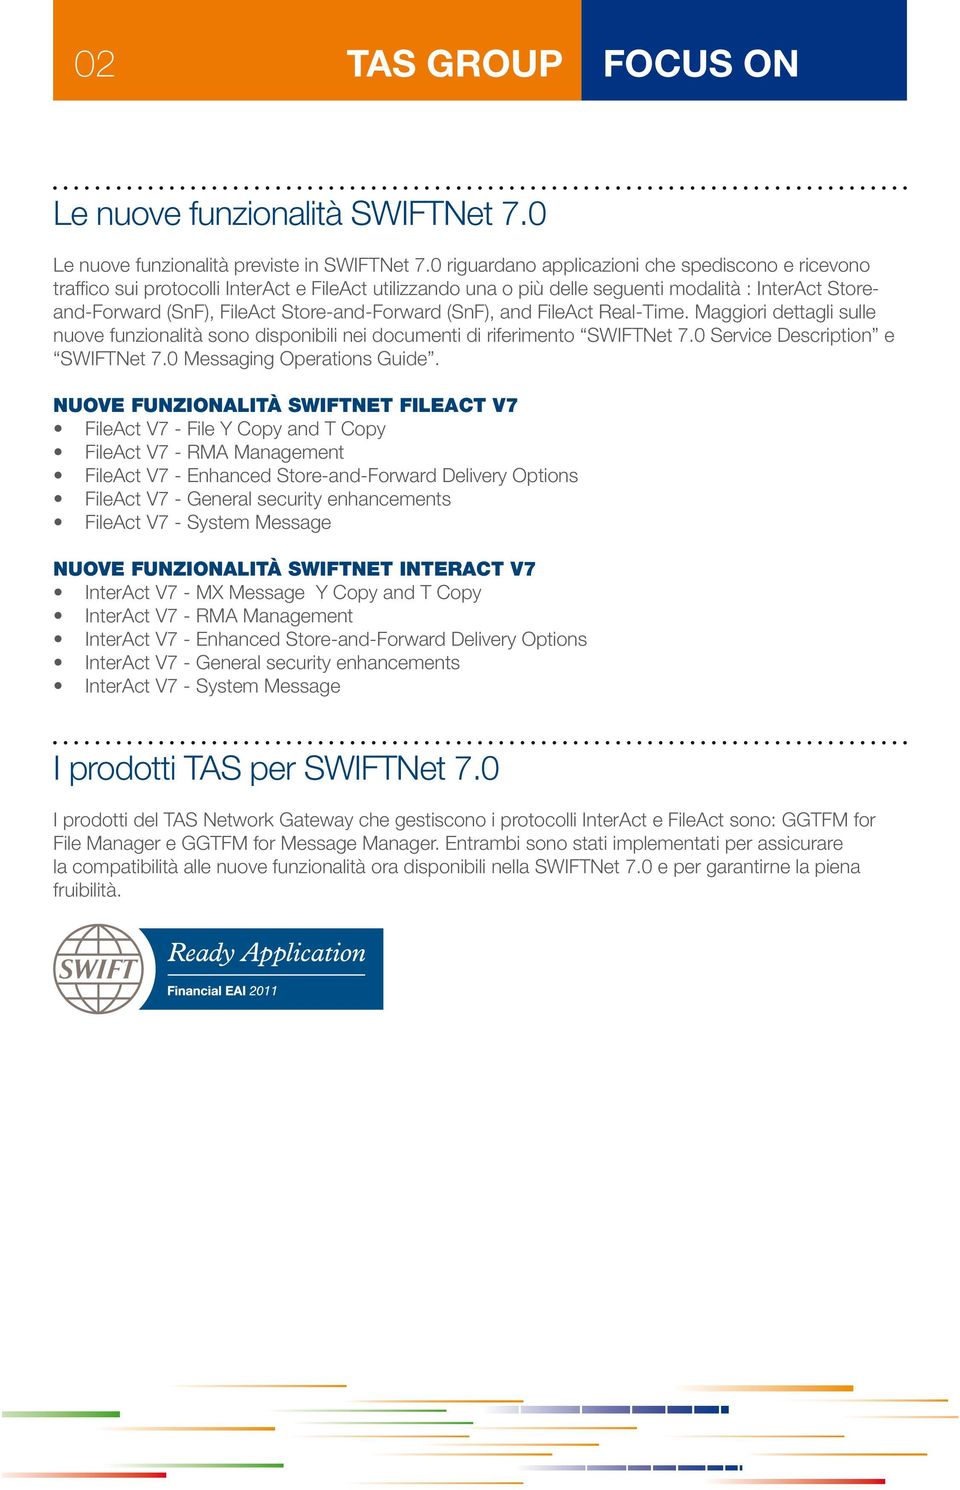 Store-and-Forward (SnF), and FileAct Real-Time. Maggiori dettagli sulle nuove funzionalità sono disponibili nei documenti di riferimento SWIFTNet 7.0 Service Description e SWIFTNet 7.